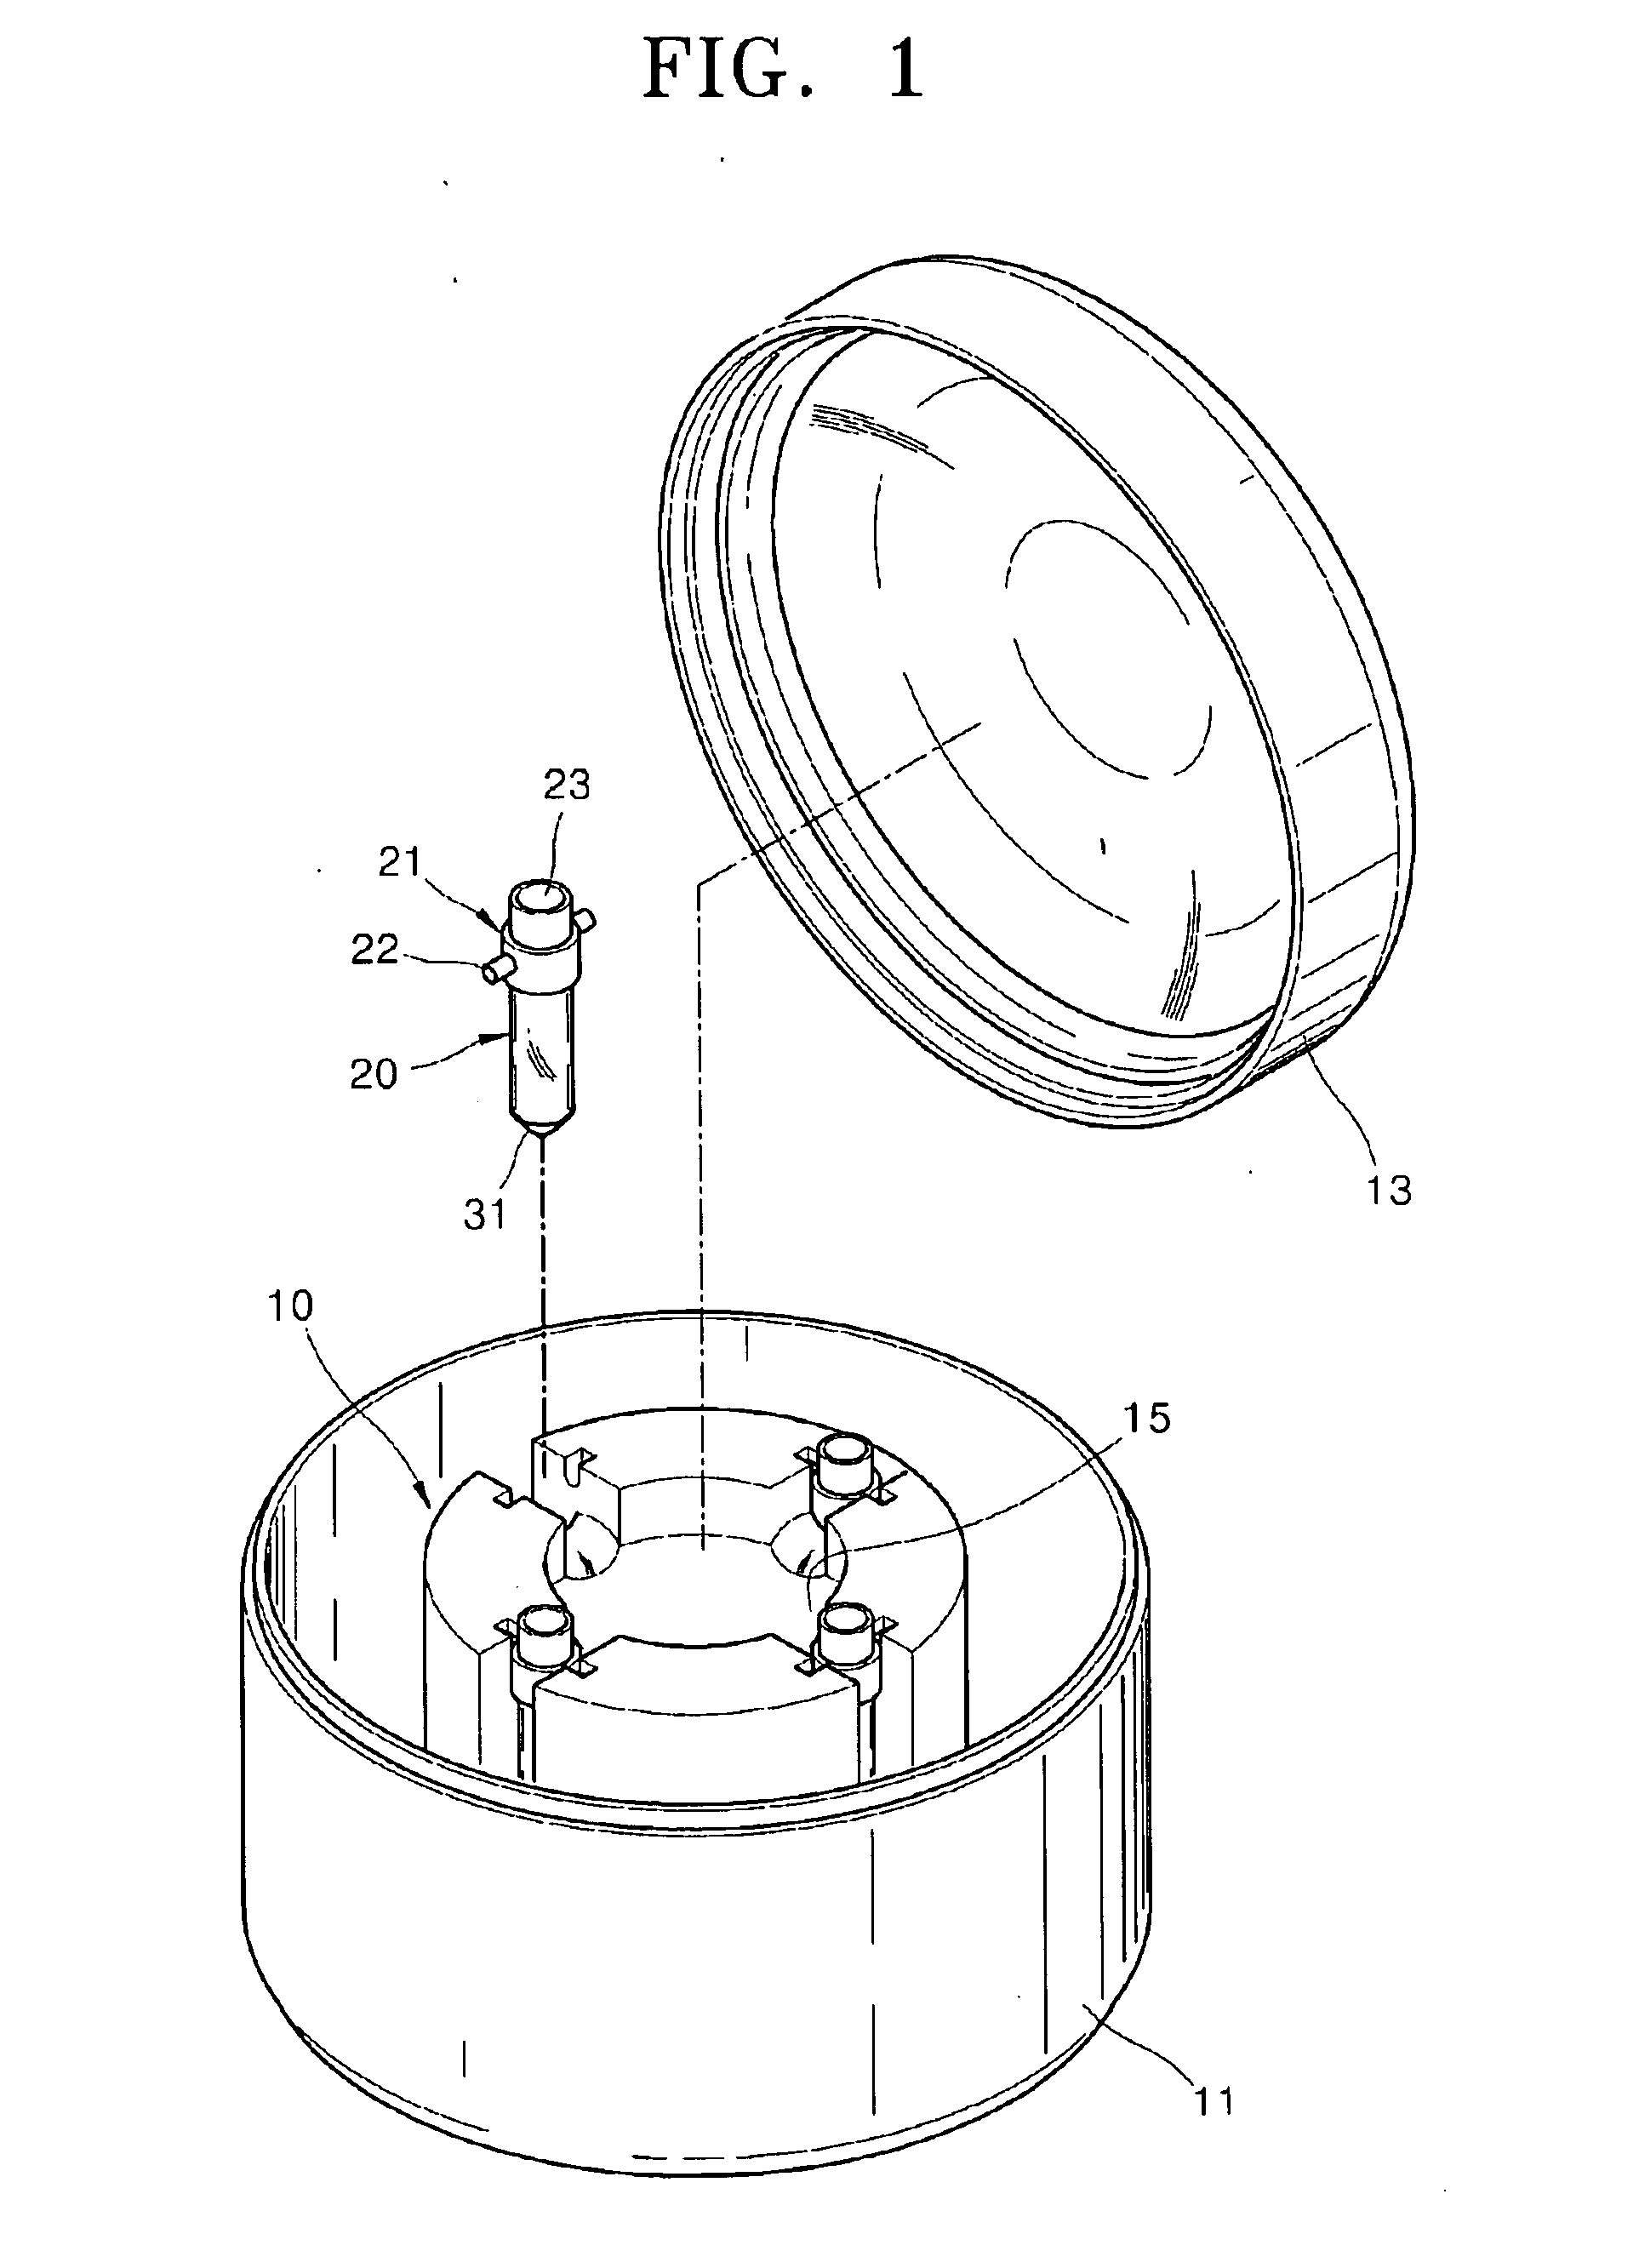 Centrifuge and centrifuging method